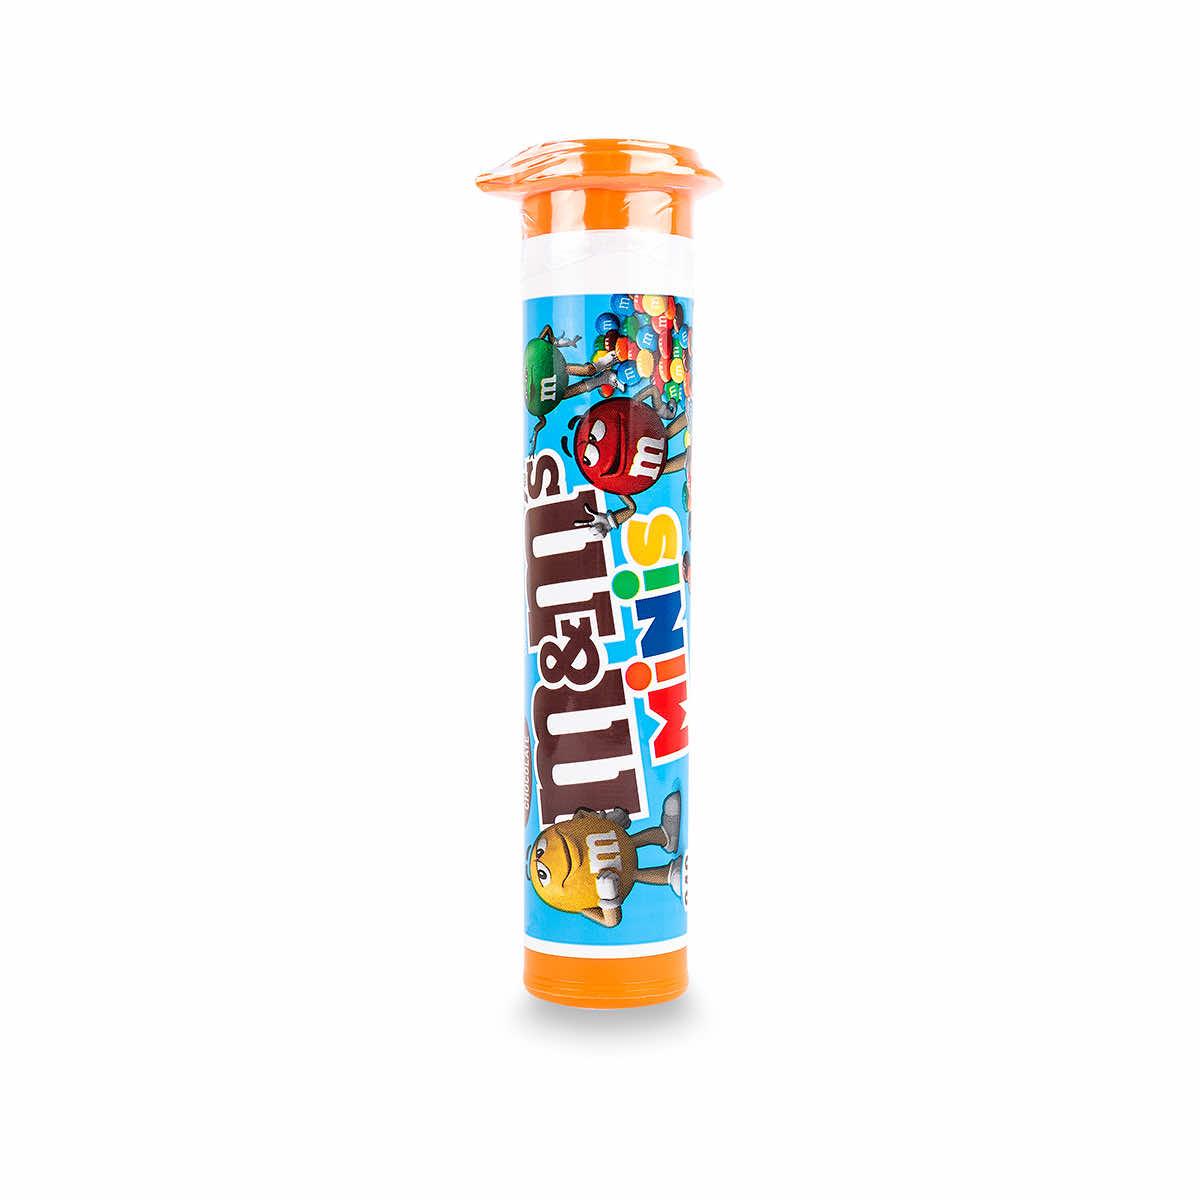 M&M's Minis Milk Chocolate Tube 30.6g